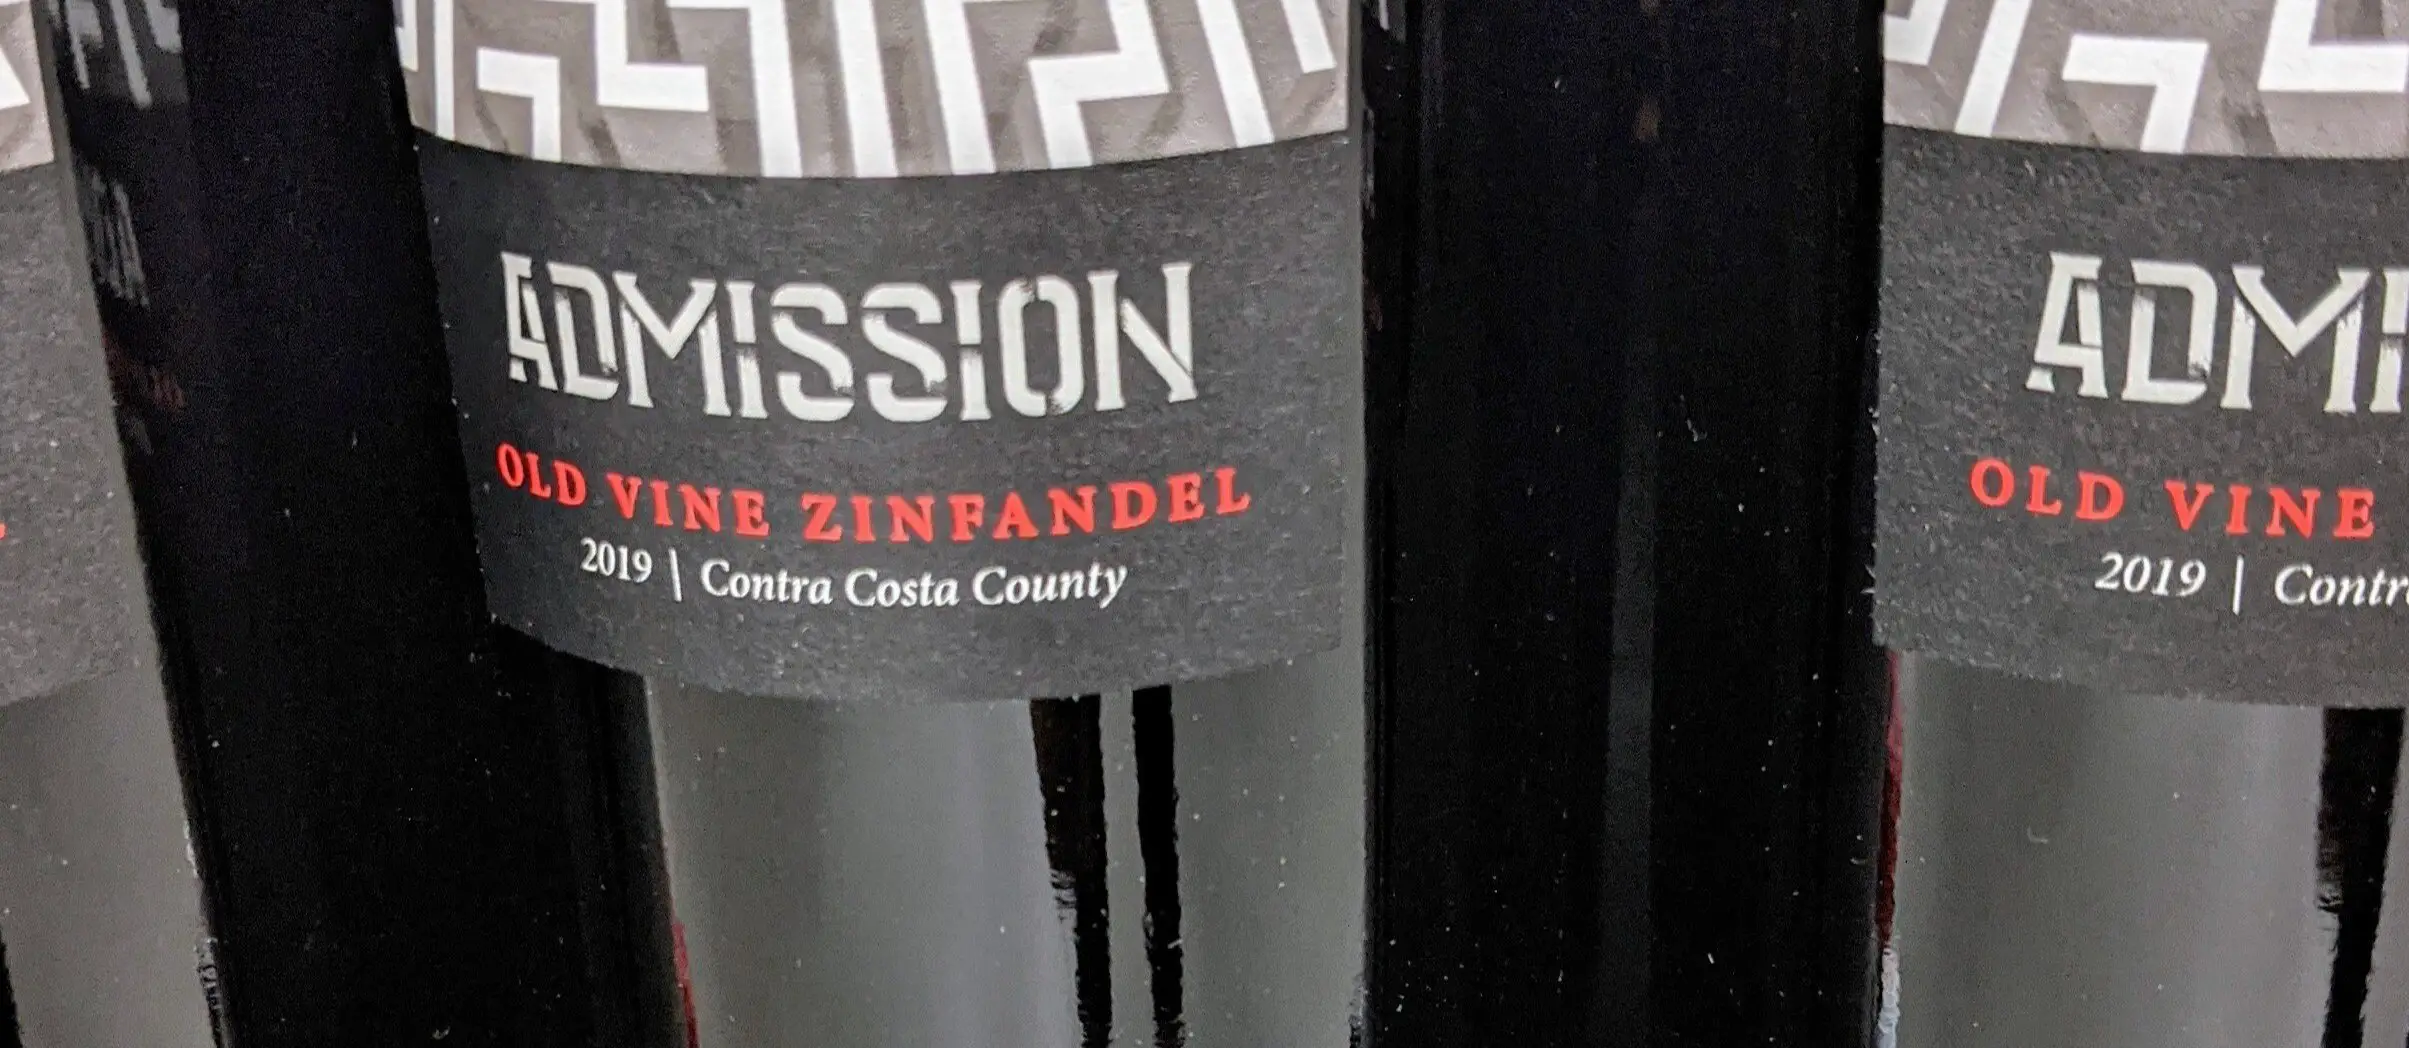 zinfandel wine guide - old vine zinfandel bottles